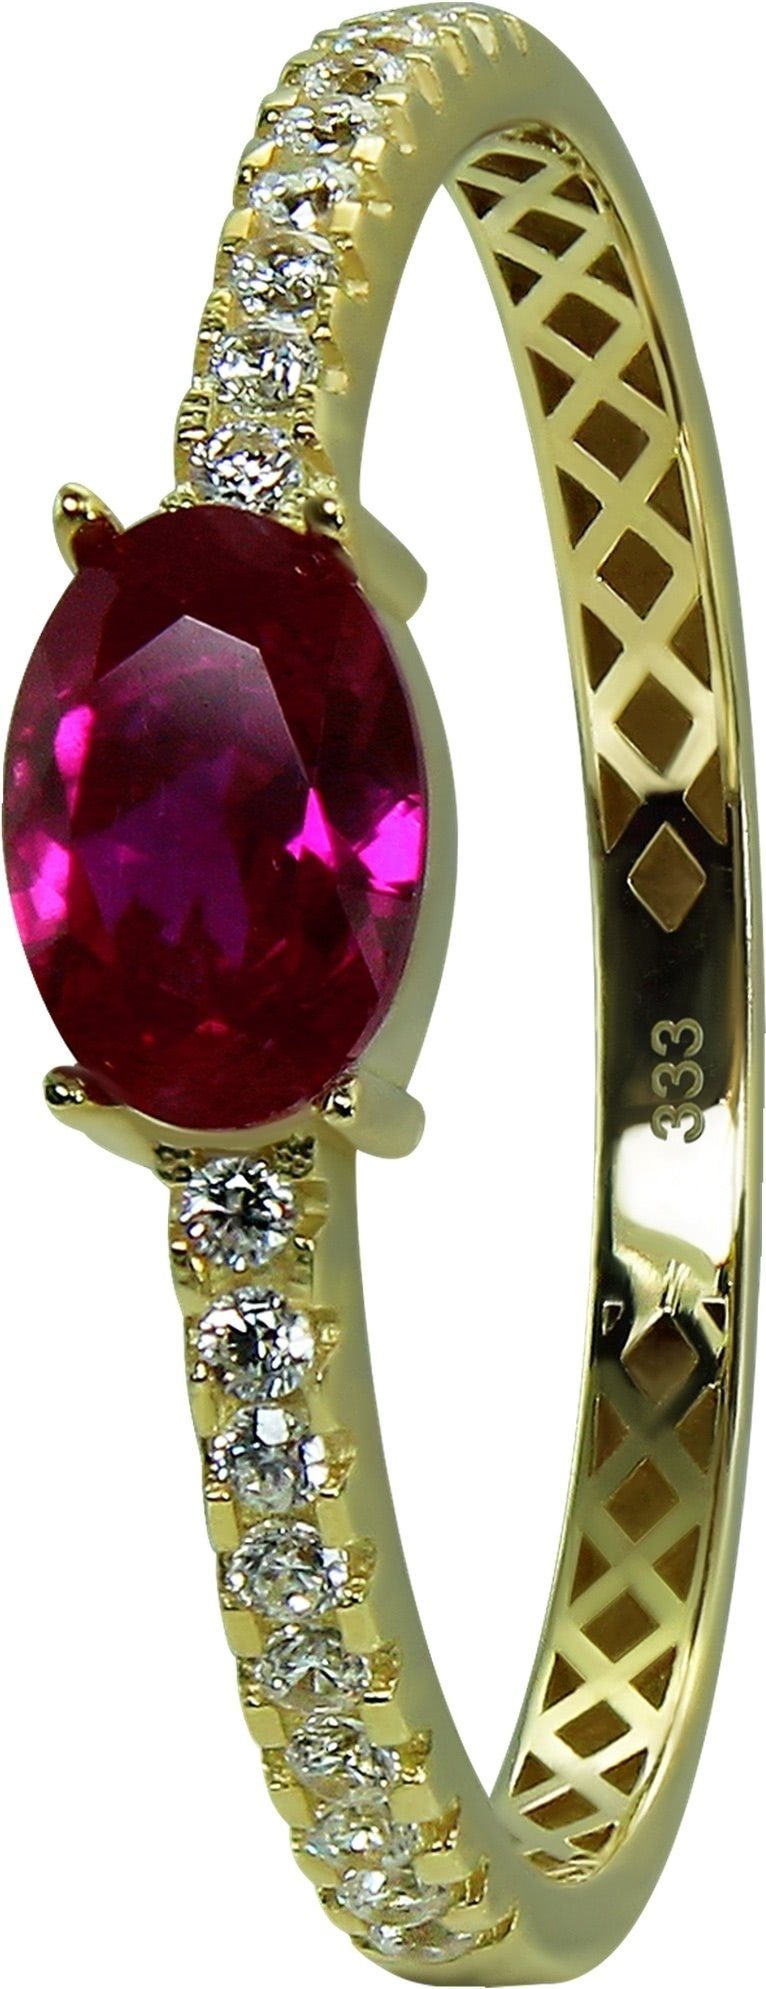 GoldDream gold, GoldDream 8 (Fingerring), Damen Farbe: Ring 333 pink Beauty weiß, Gold Beauty Goldring Gelbgold - Gr.54 Karat, Ring